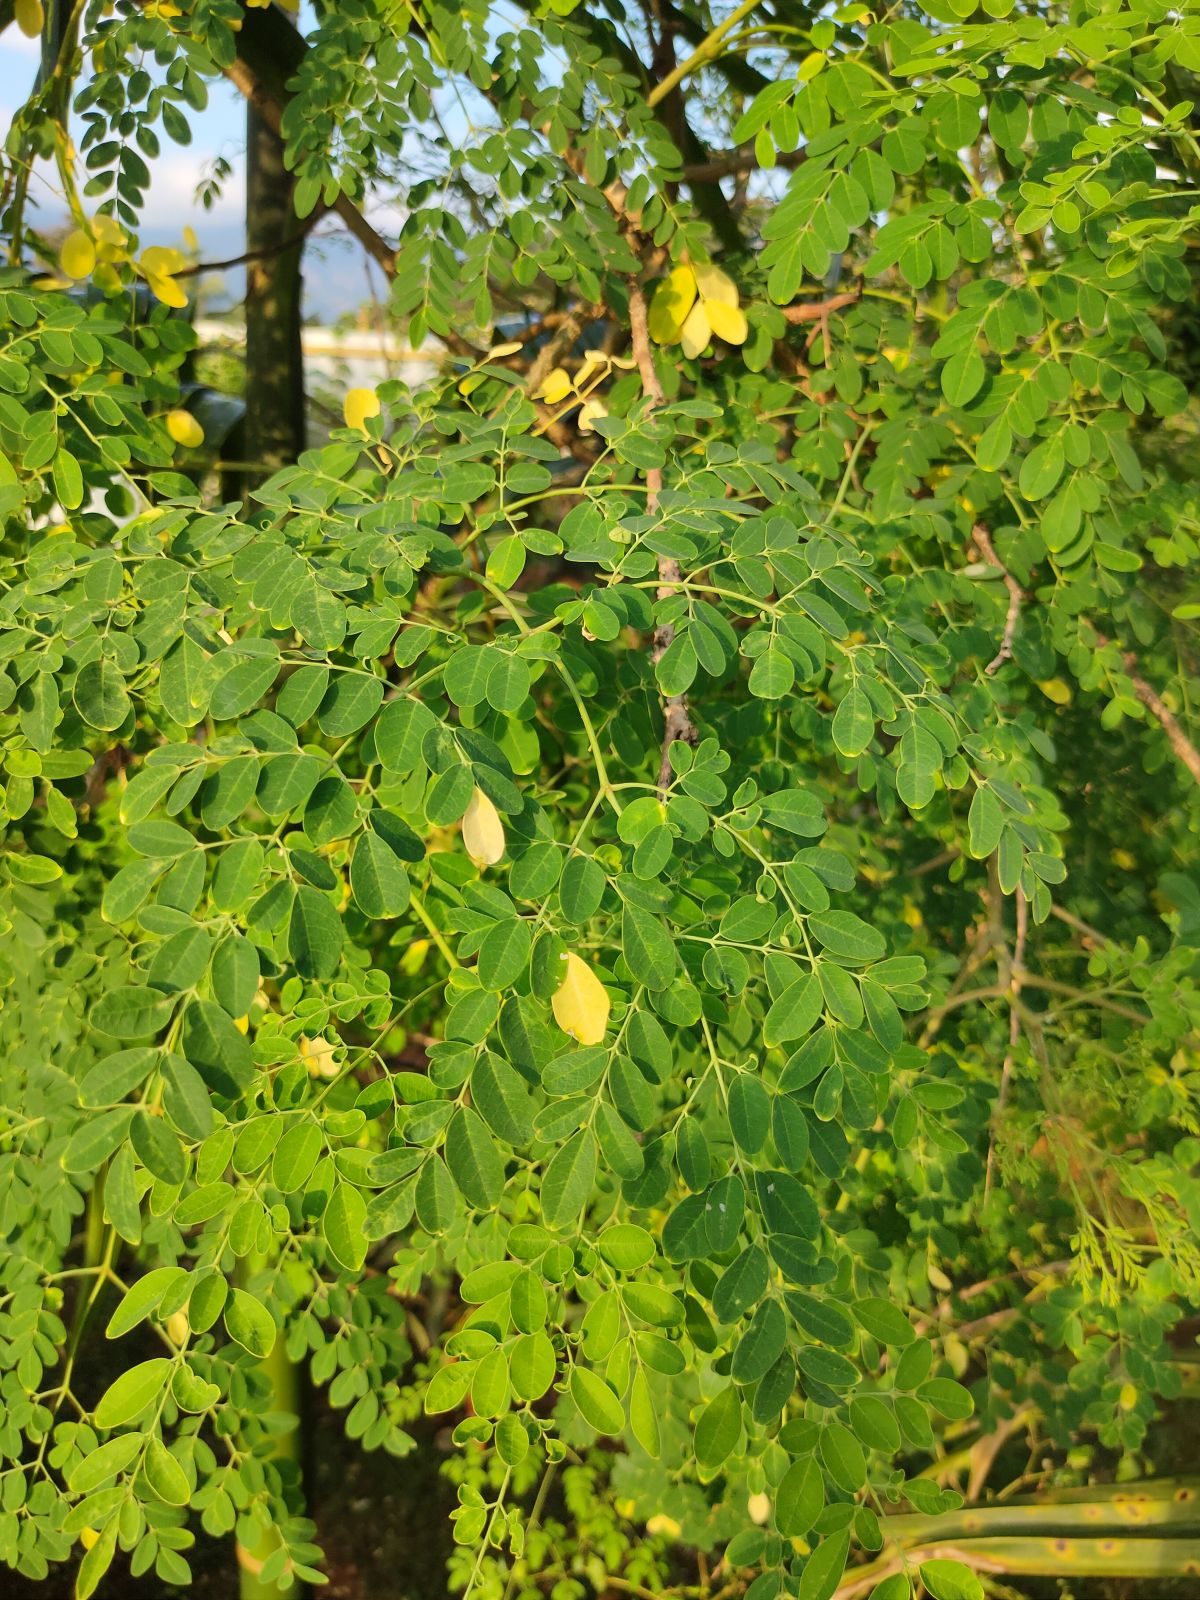 Moringa leaves (Moringa oleifera)